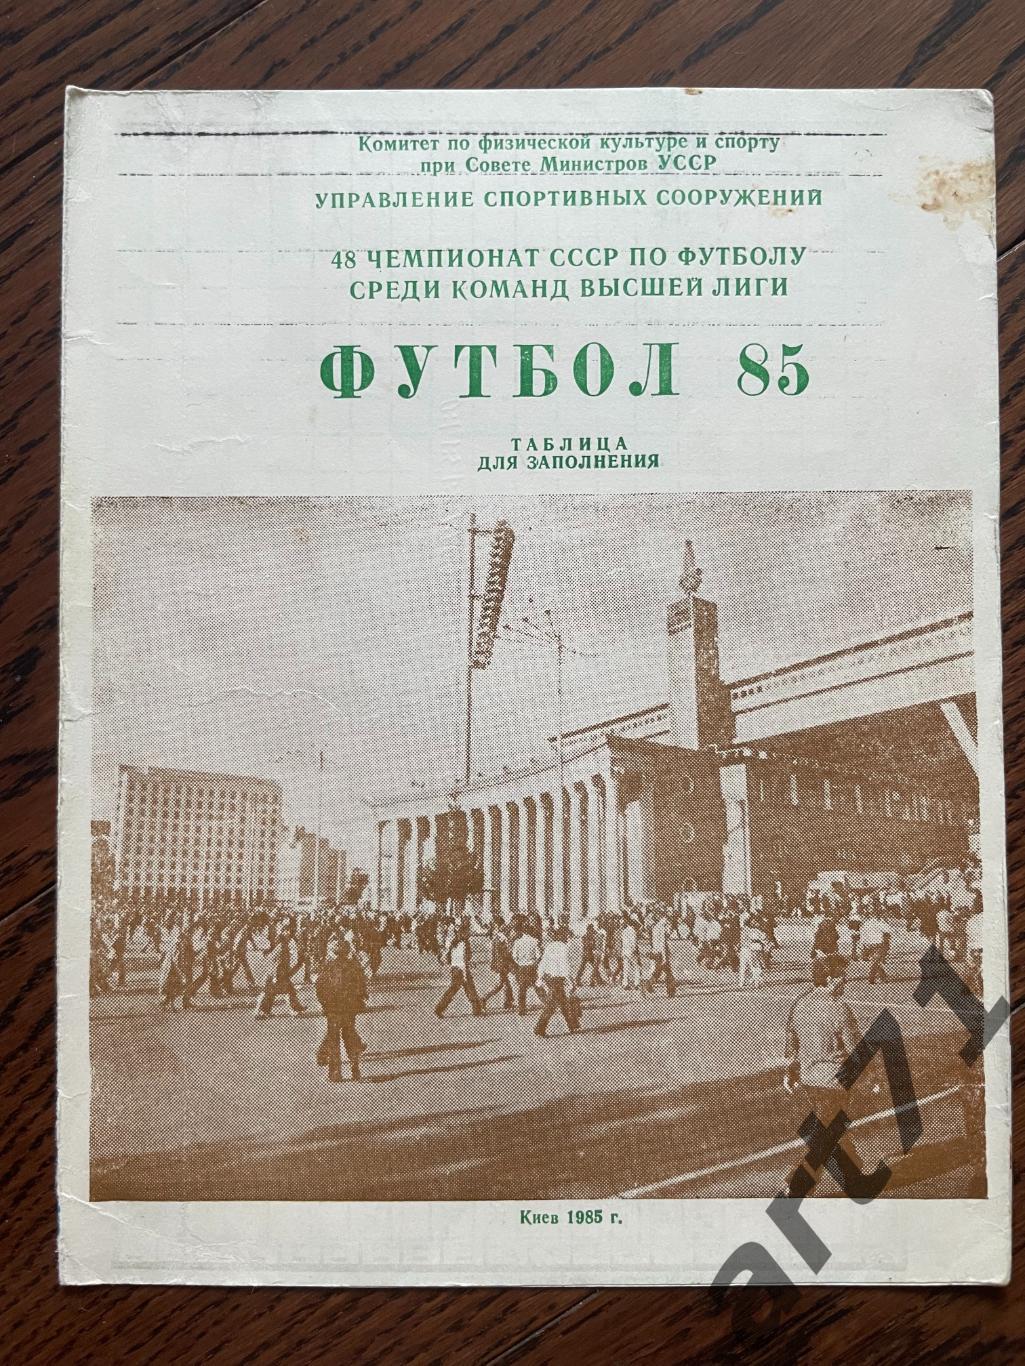 Киев 1985 год, календарь, таблица для заполнения